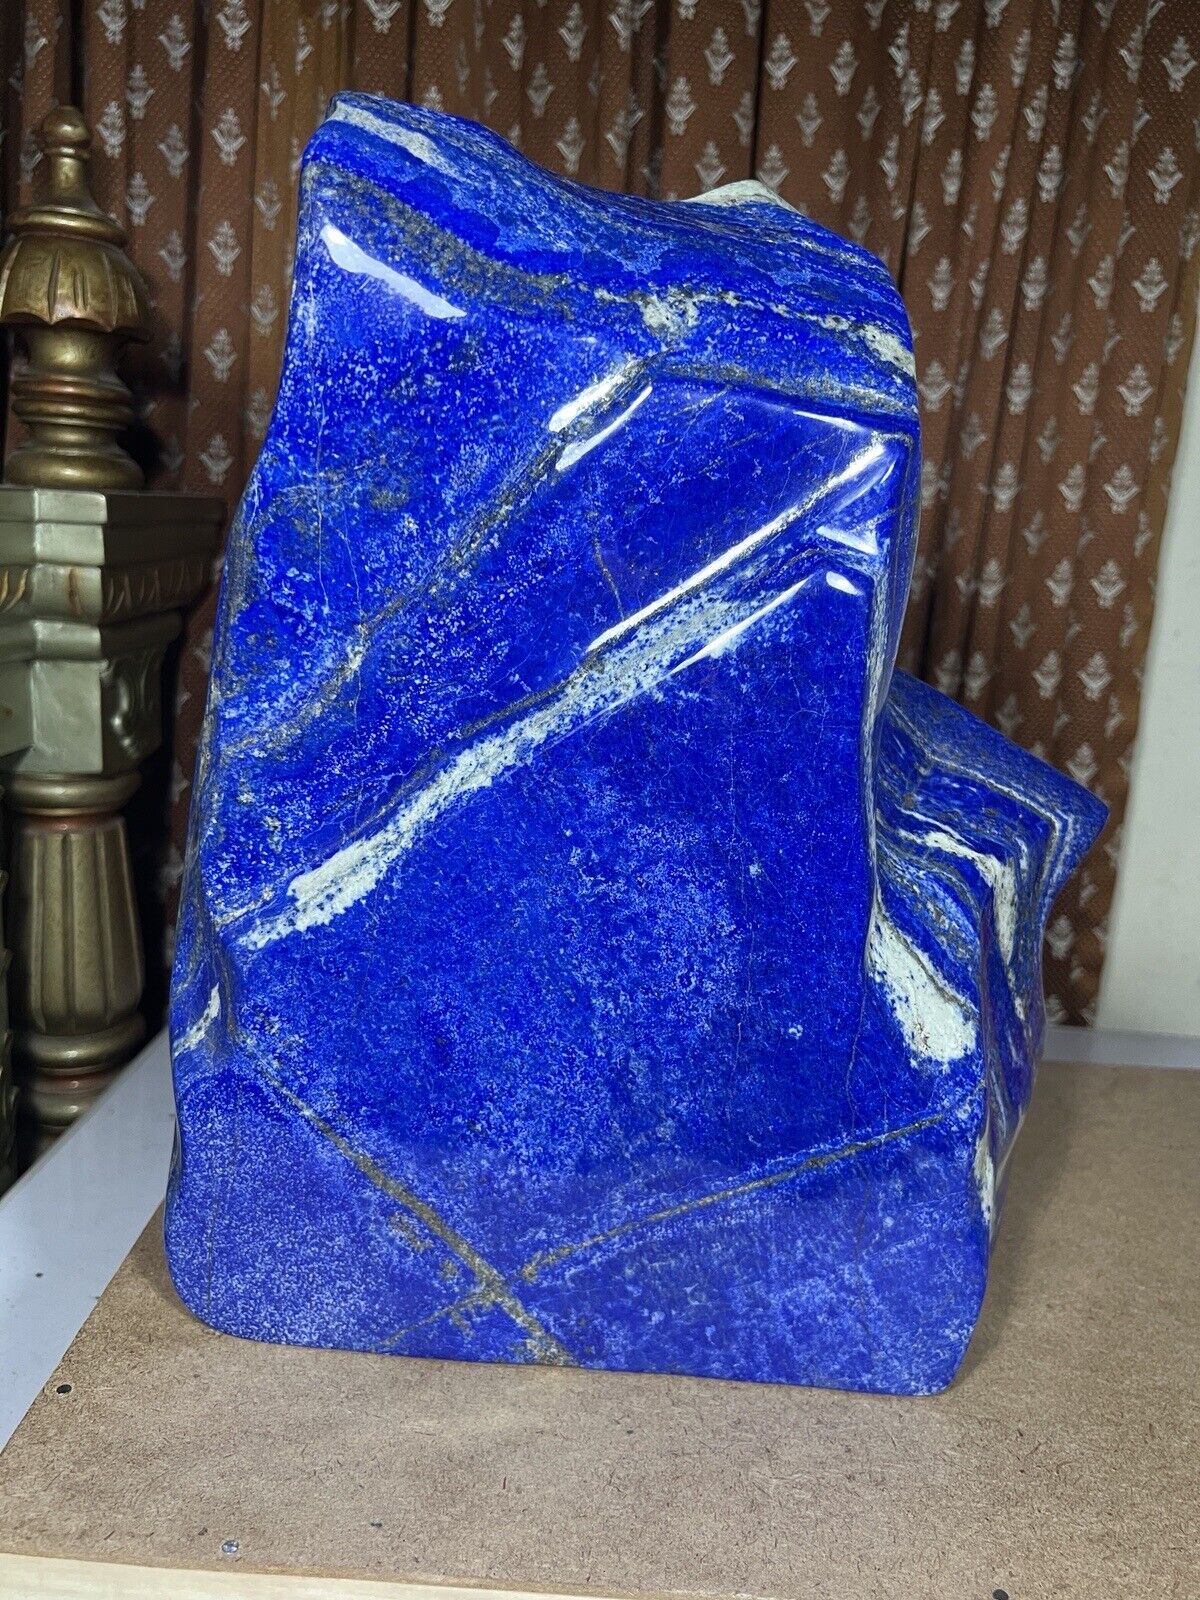 17.4 KG Premium Grade maximum Blue Lapis Lazuli Free form geode tumbled decor